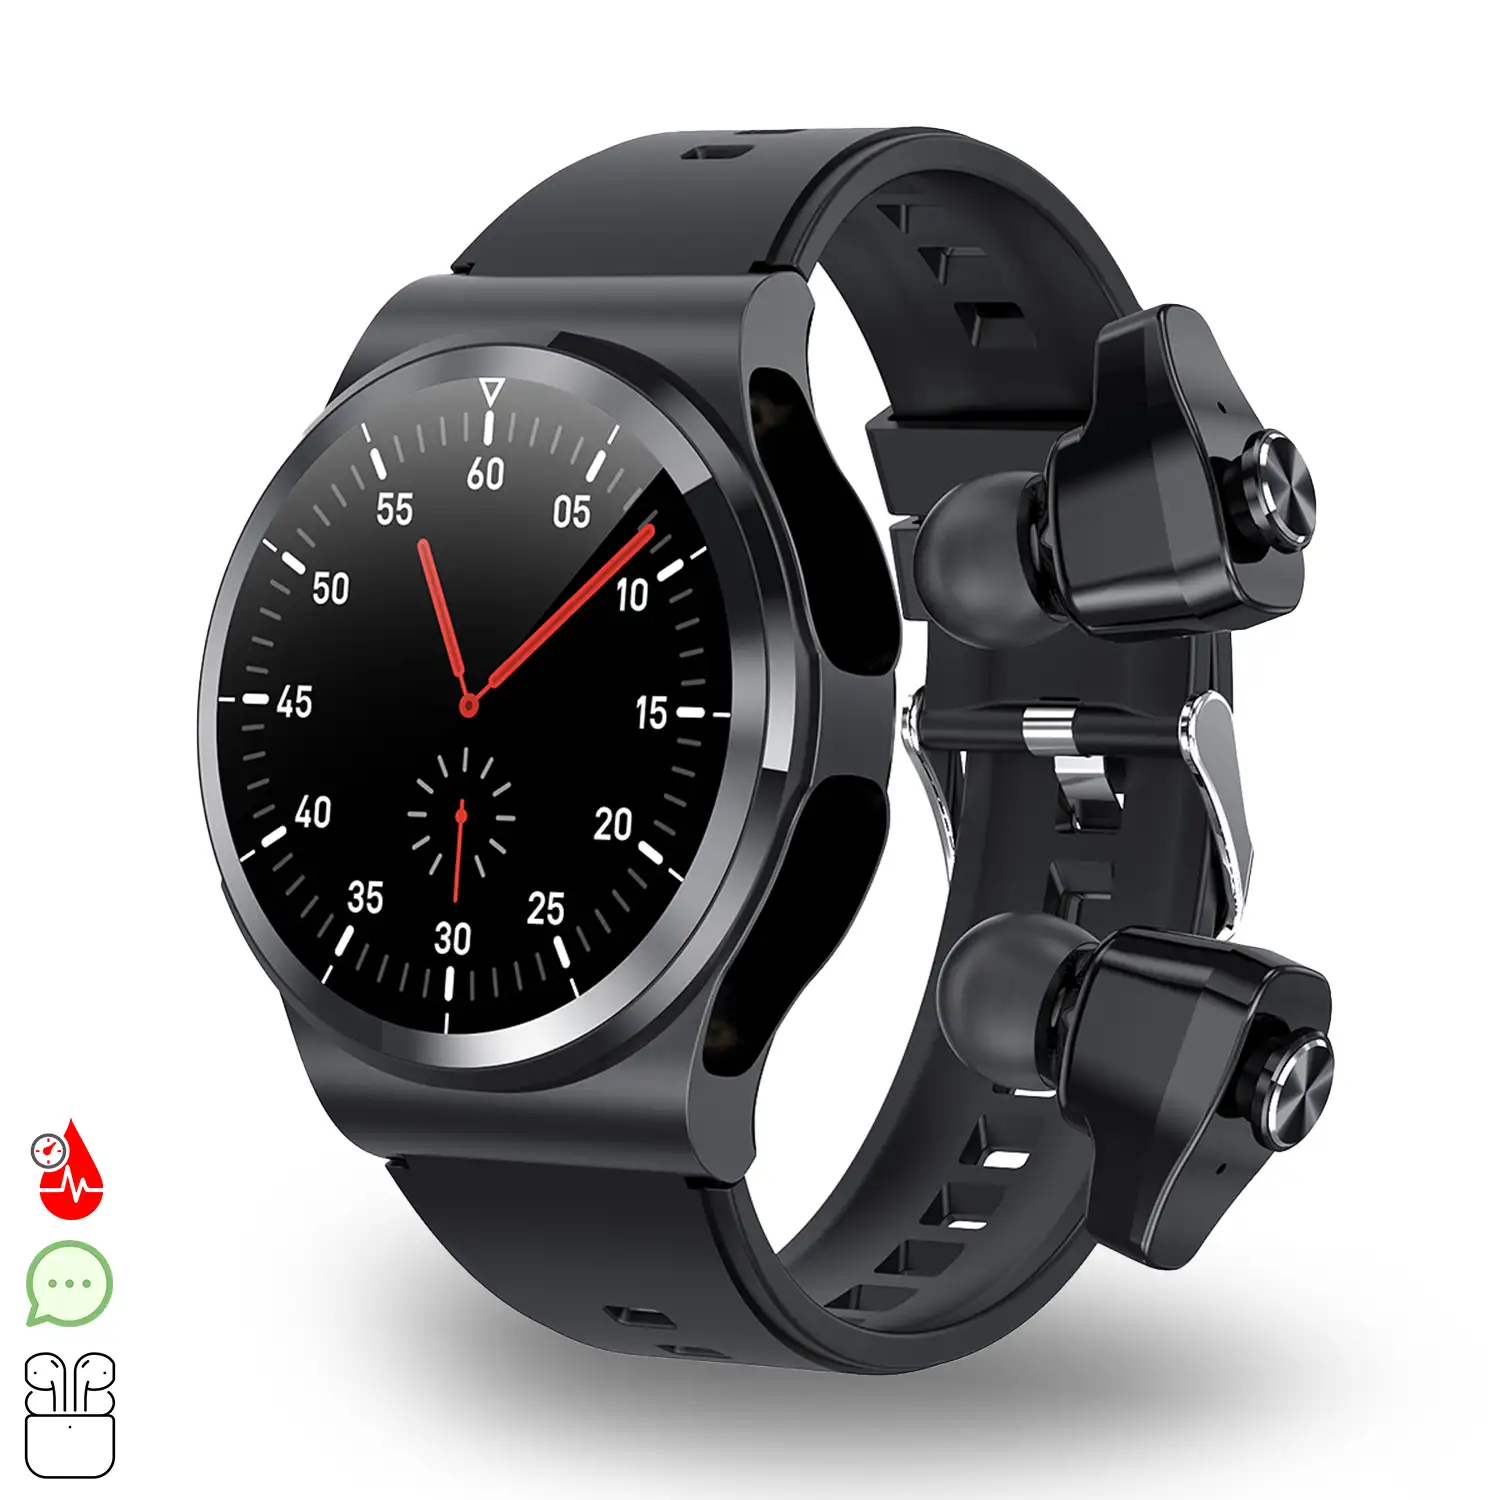 Smartwatch GT69 con auriculares Bluetooth 5.0 TWS integrados. Monitor de tensión y oxígeno en sangre; modo multideportivo.